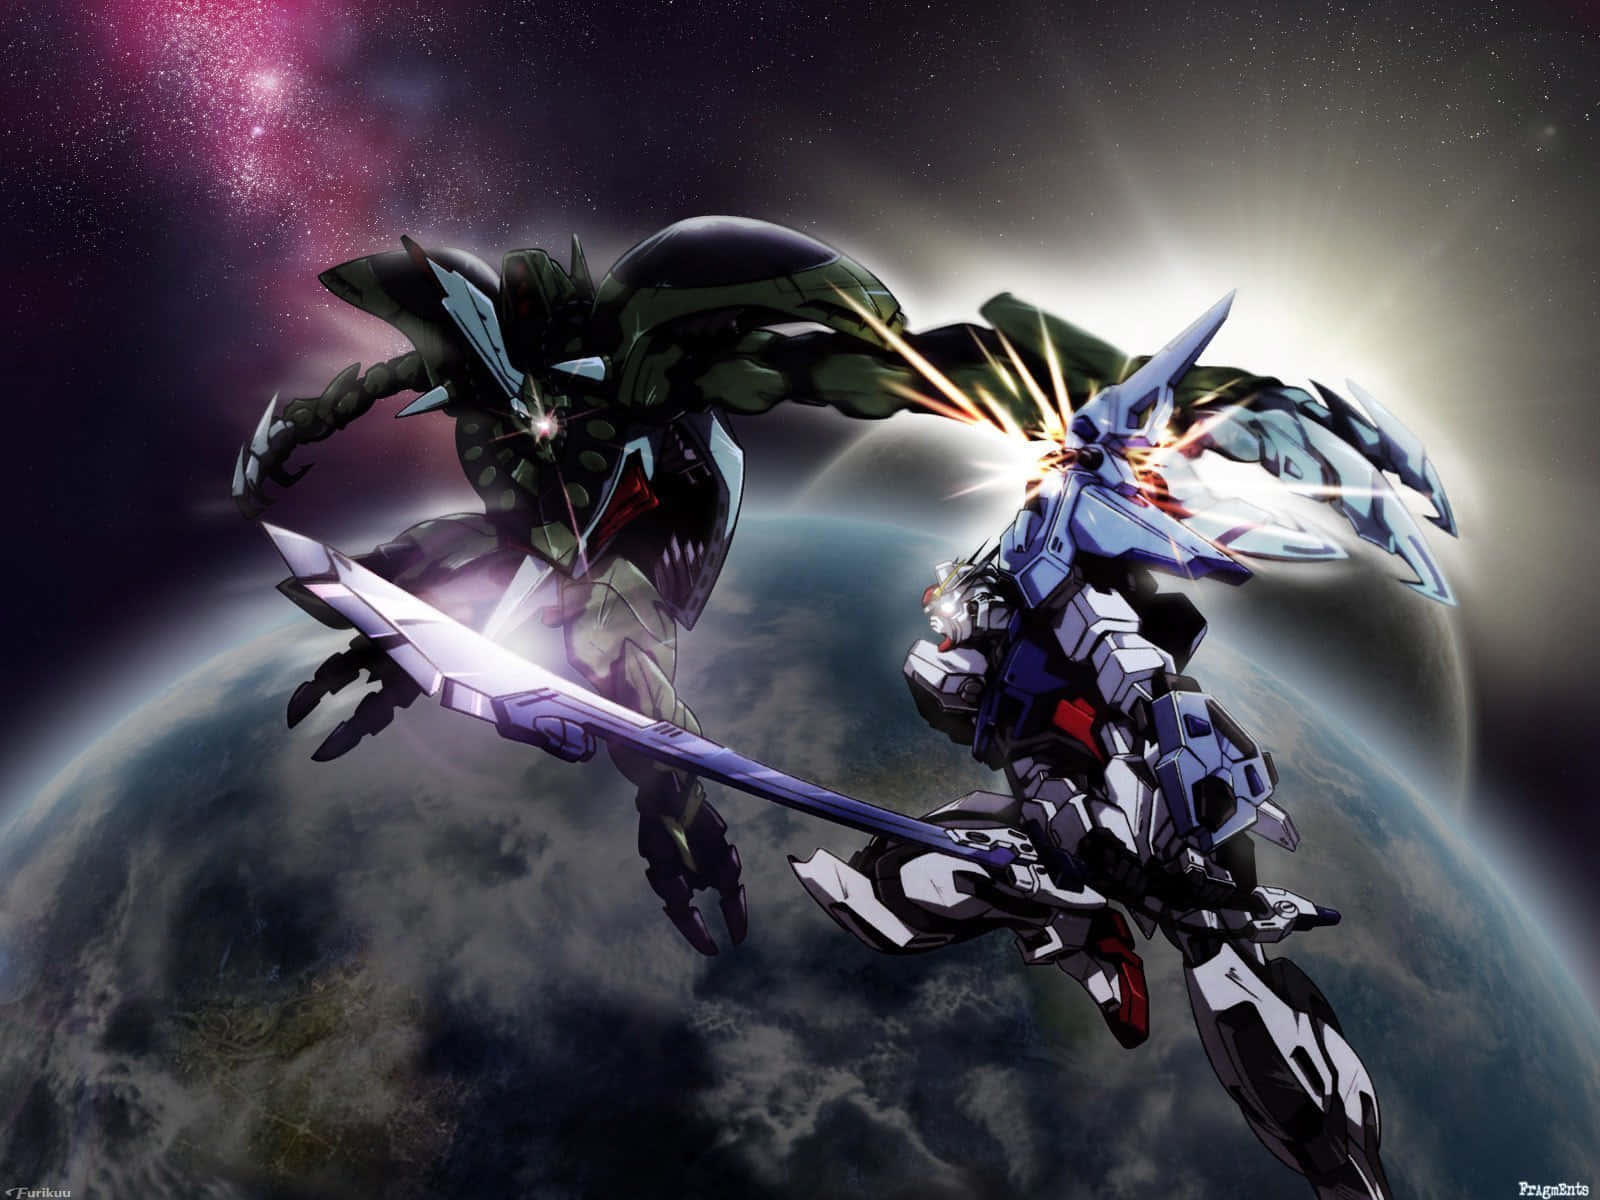 Gundamskrivbordsbakgrund Med Rymdfight. Wallpaper